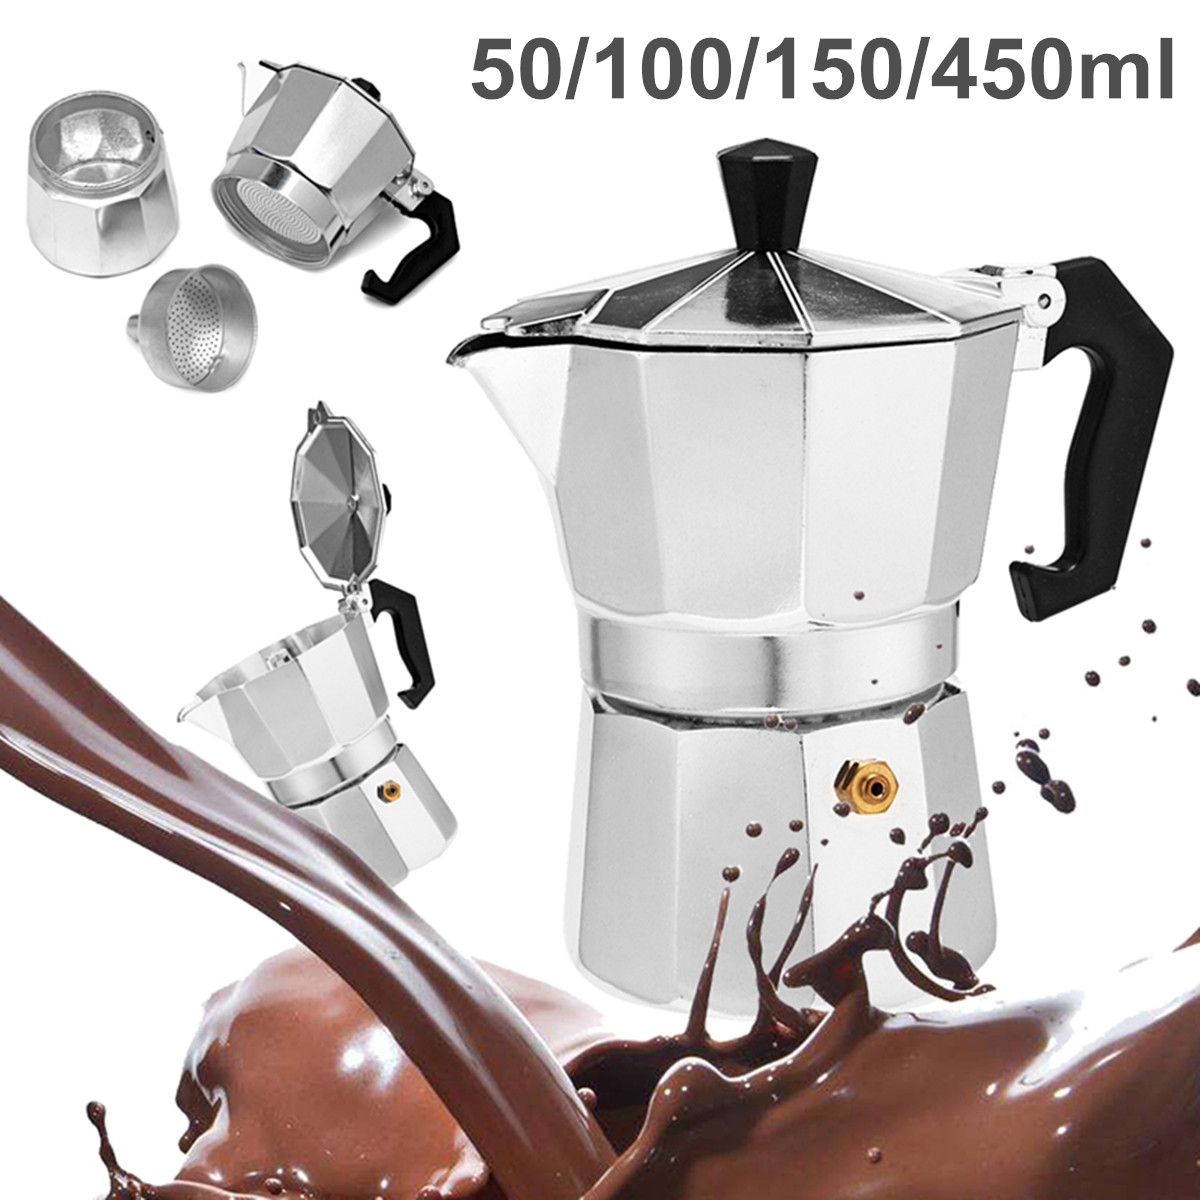 50 / 100 / 150 / 450ml Silver Aluminum Octagonal Mocha Coffee Pot Cup Percolator Maker Tea Pot 15